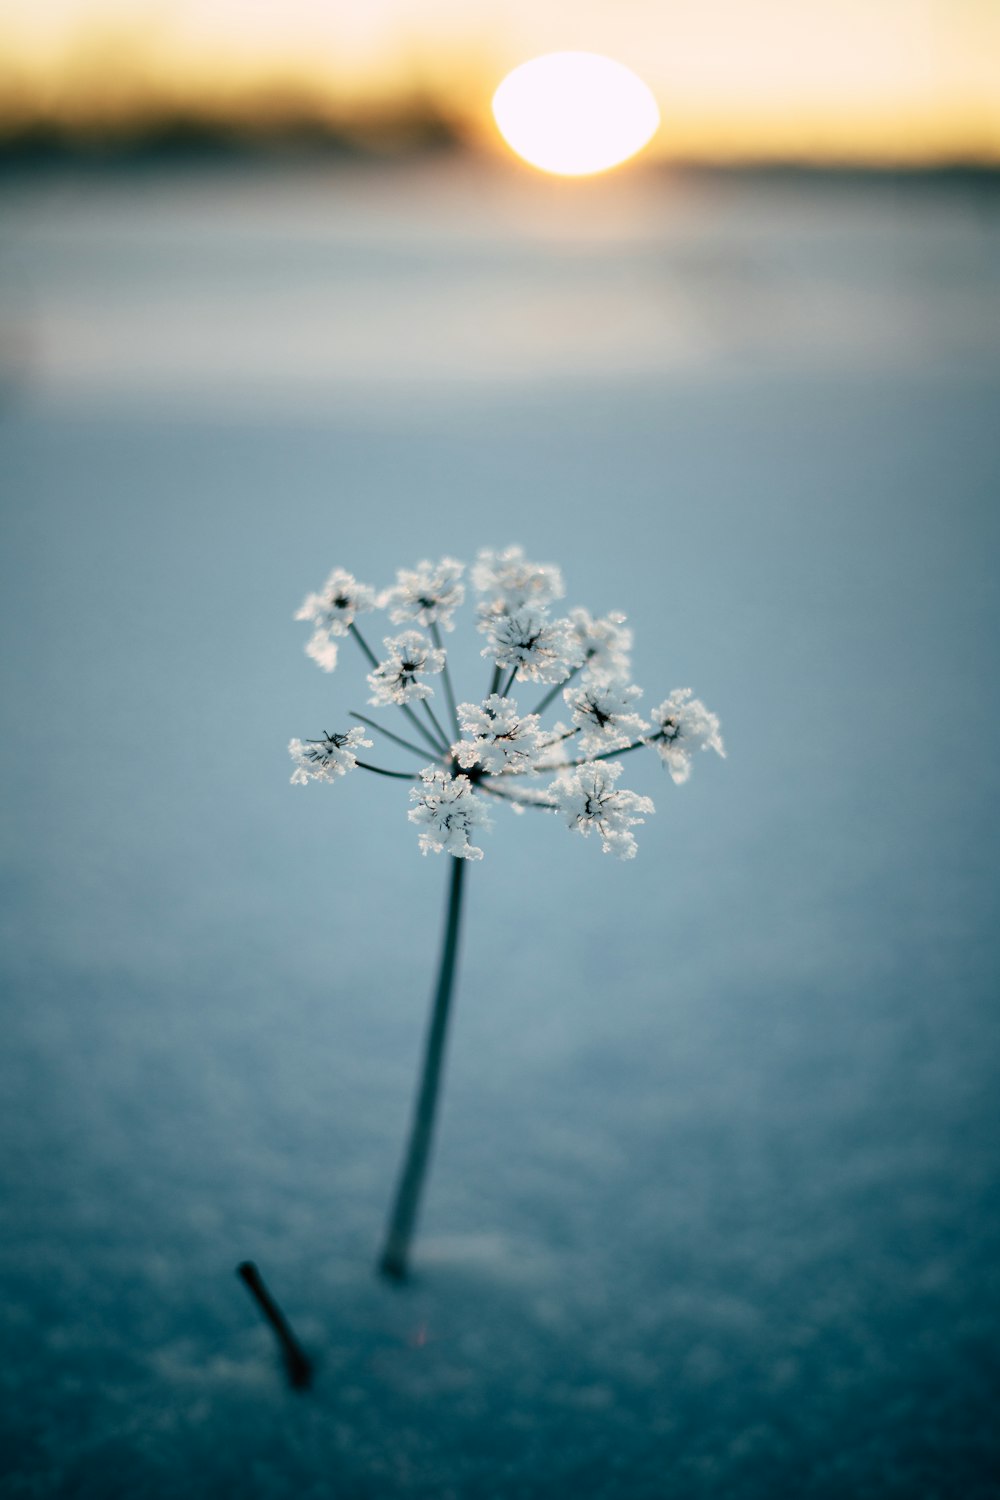 fiore bianco in fotografia ravvicinata